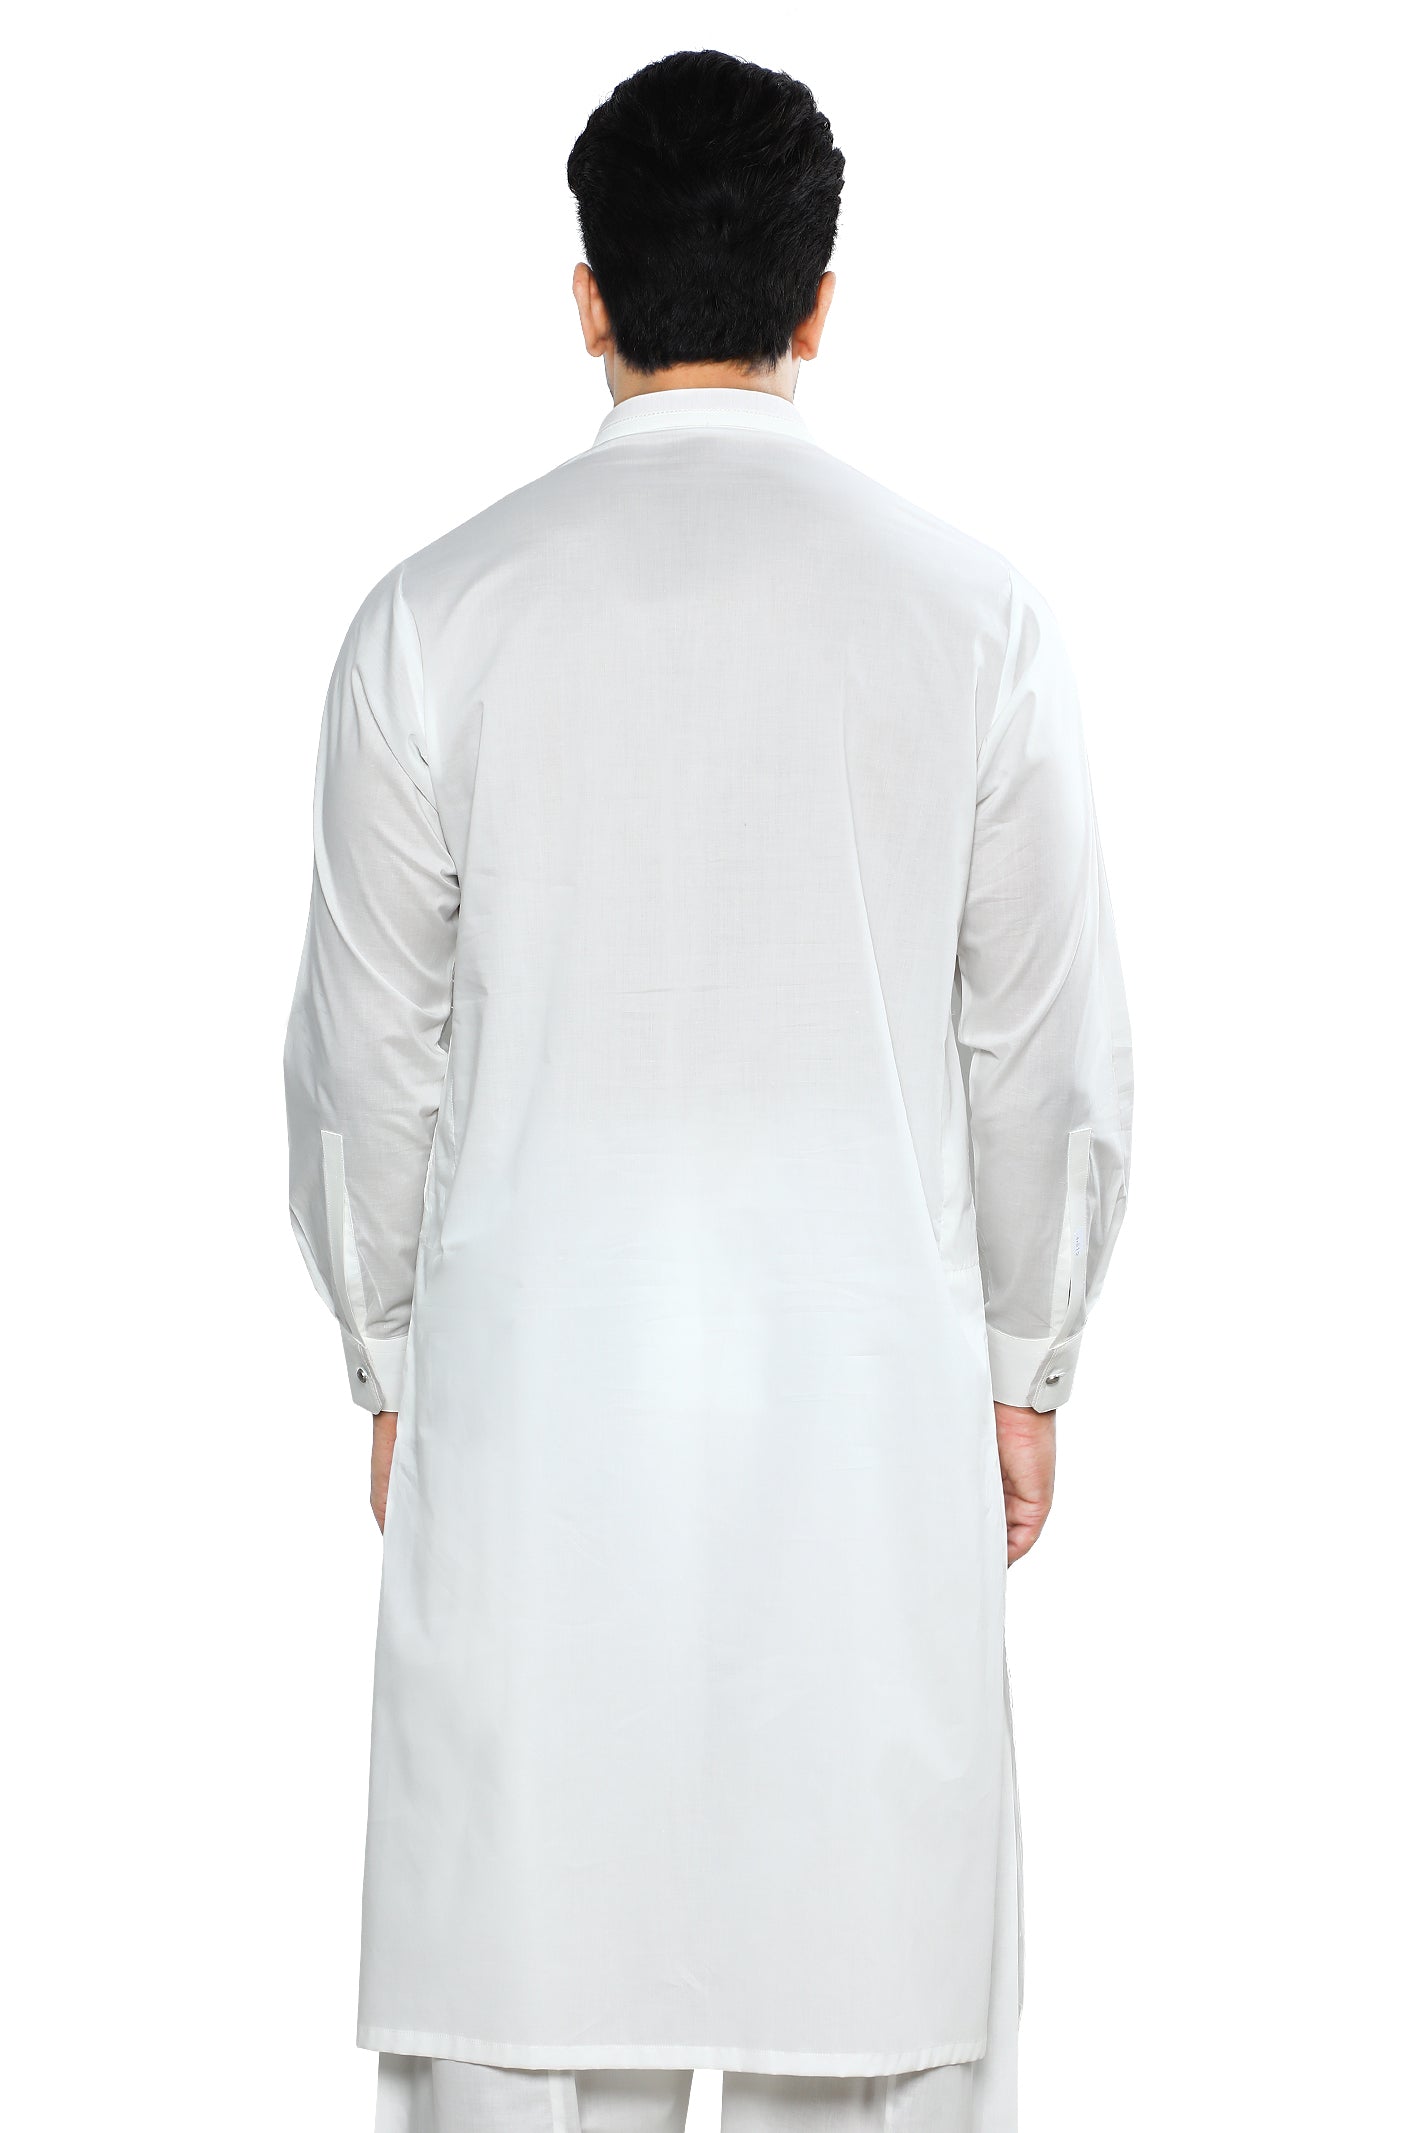 Formal Shalwar Suit for Men SKU: EG3020-OFFWHITE - Diners